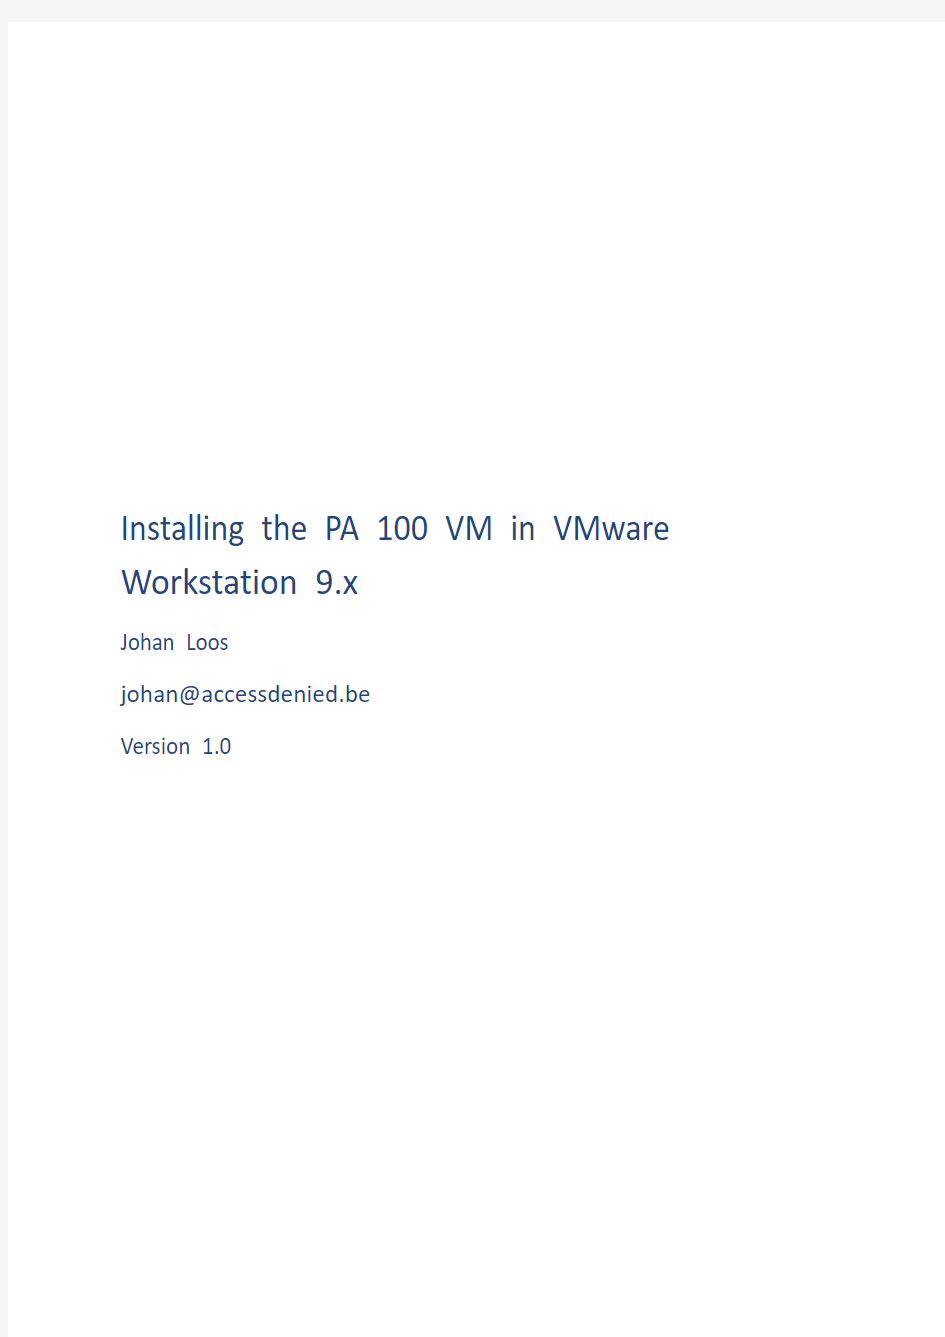 在vmware虚拟机中安装Paloalto下一代防火墙NGFW(英文)